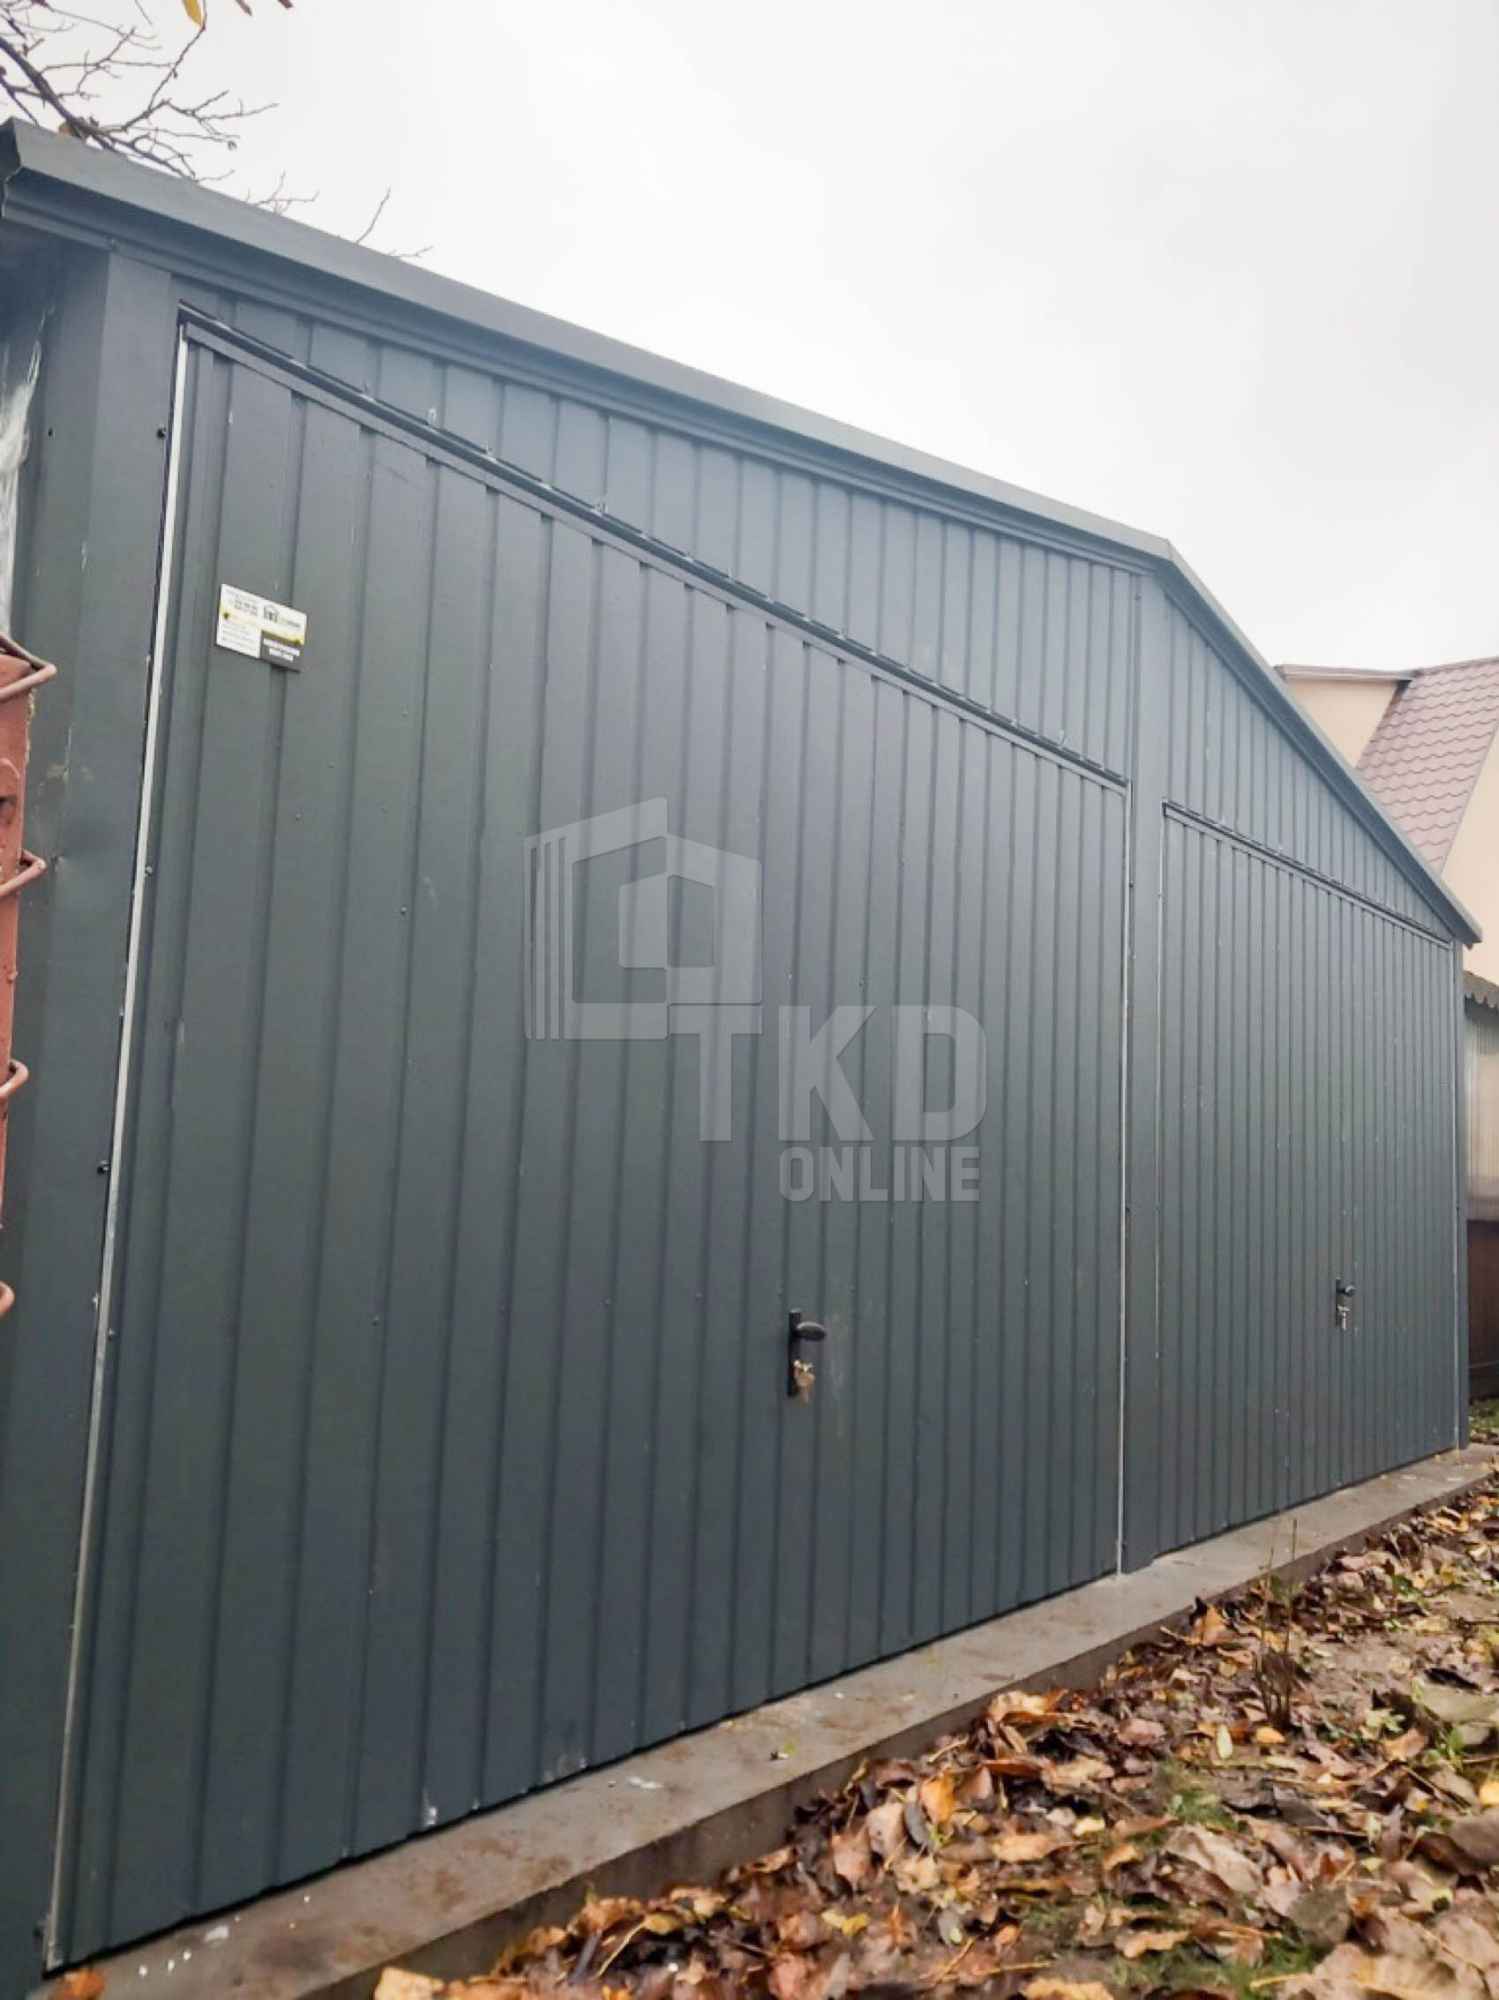 Garaż Blaszany 6,5x5 - 2x Brama - Antracyt - dach dwuspadowy TKD111 Leszno - zdjęcie 4